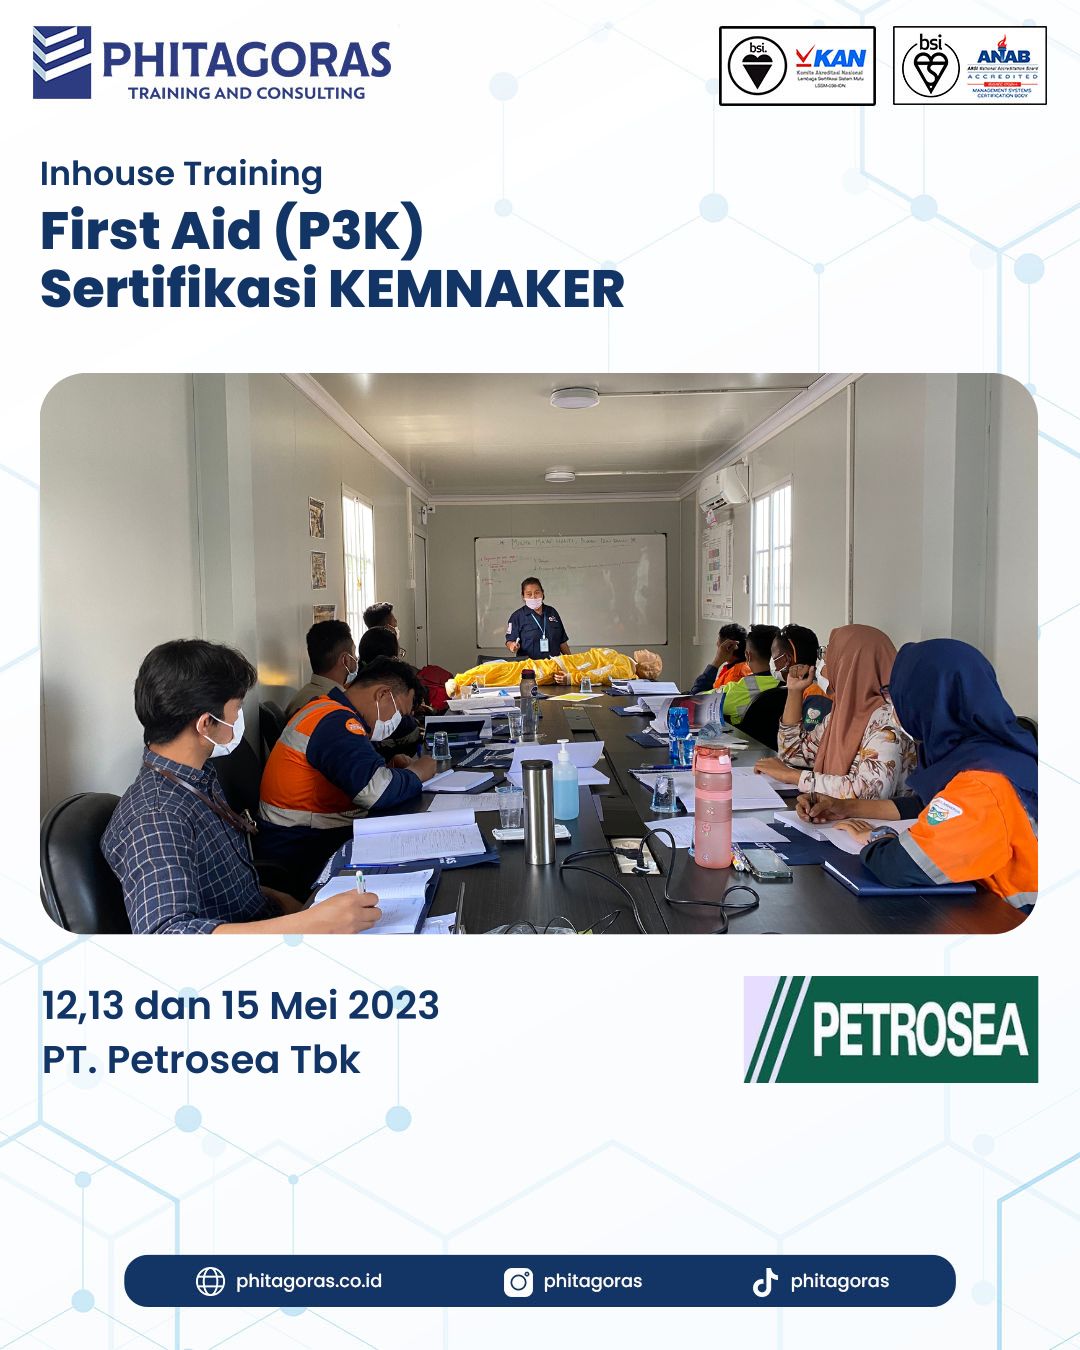 Inhouse Training First Aid (P3K) Sertifikasi KEMNAKER - PT. Petrosea, Tbk